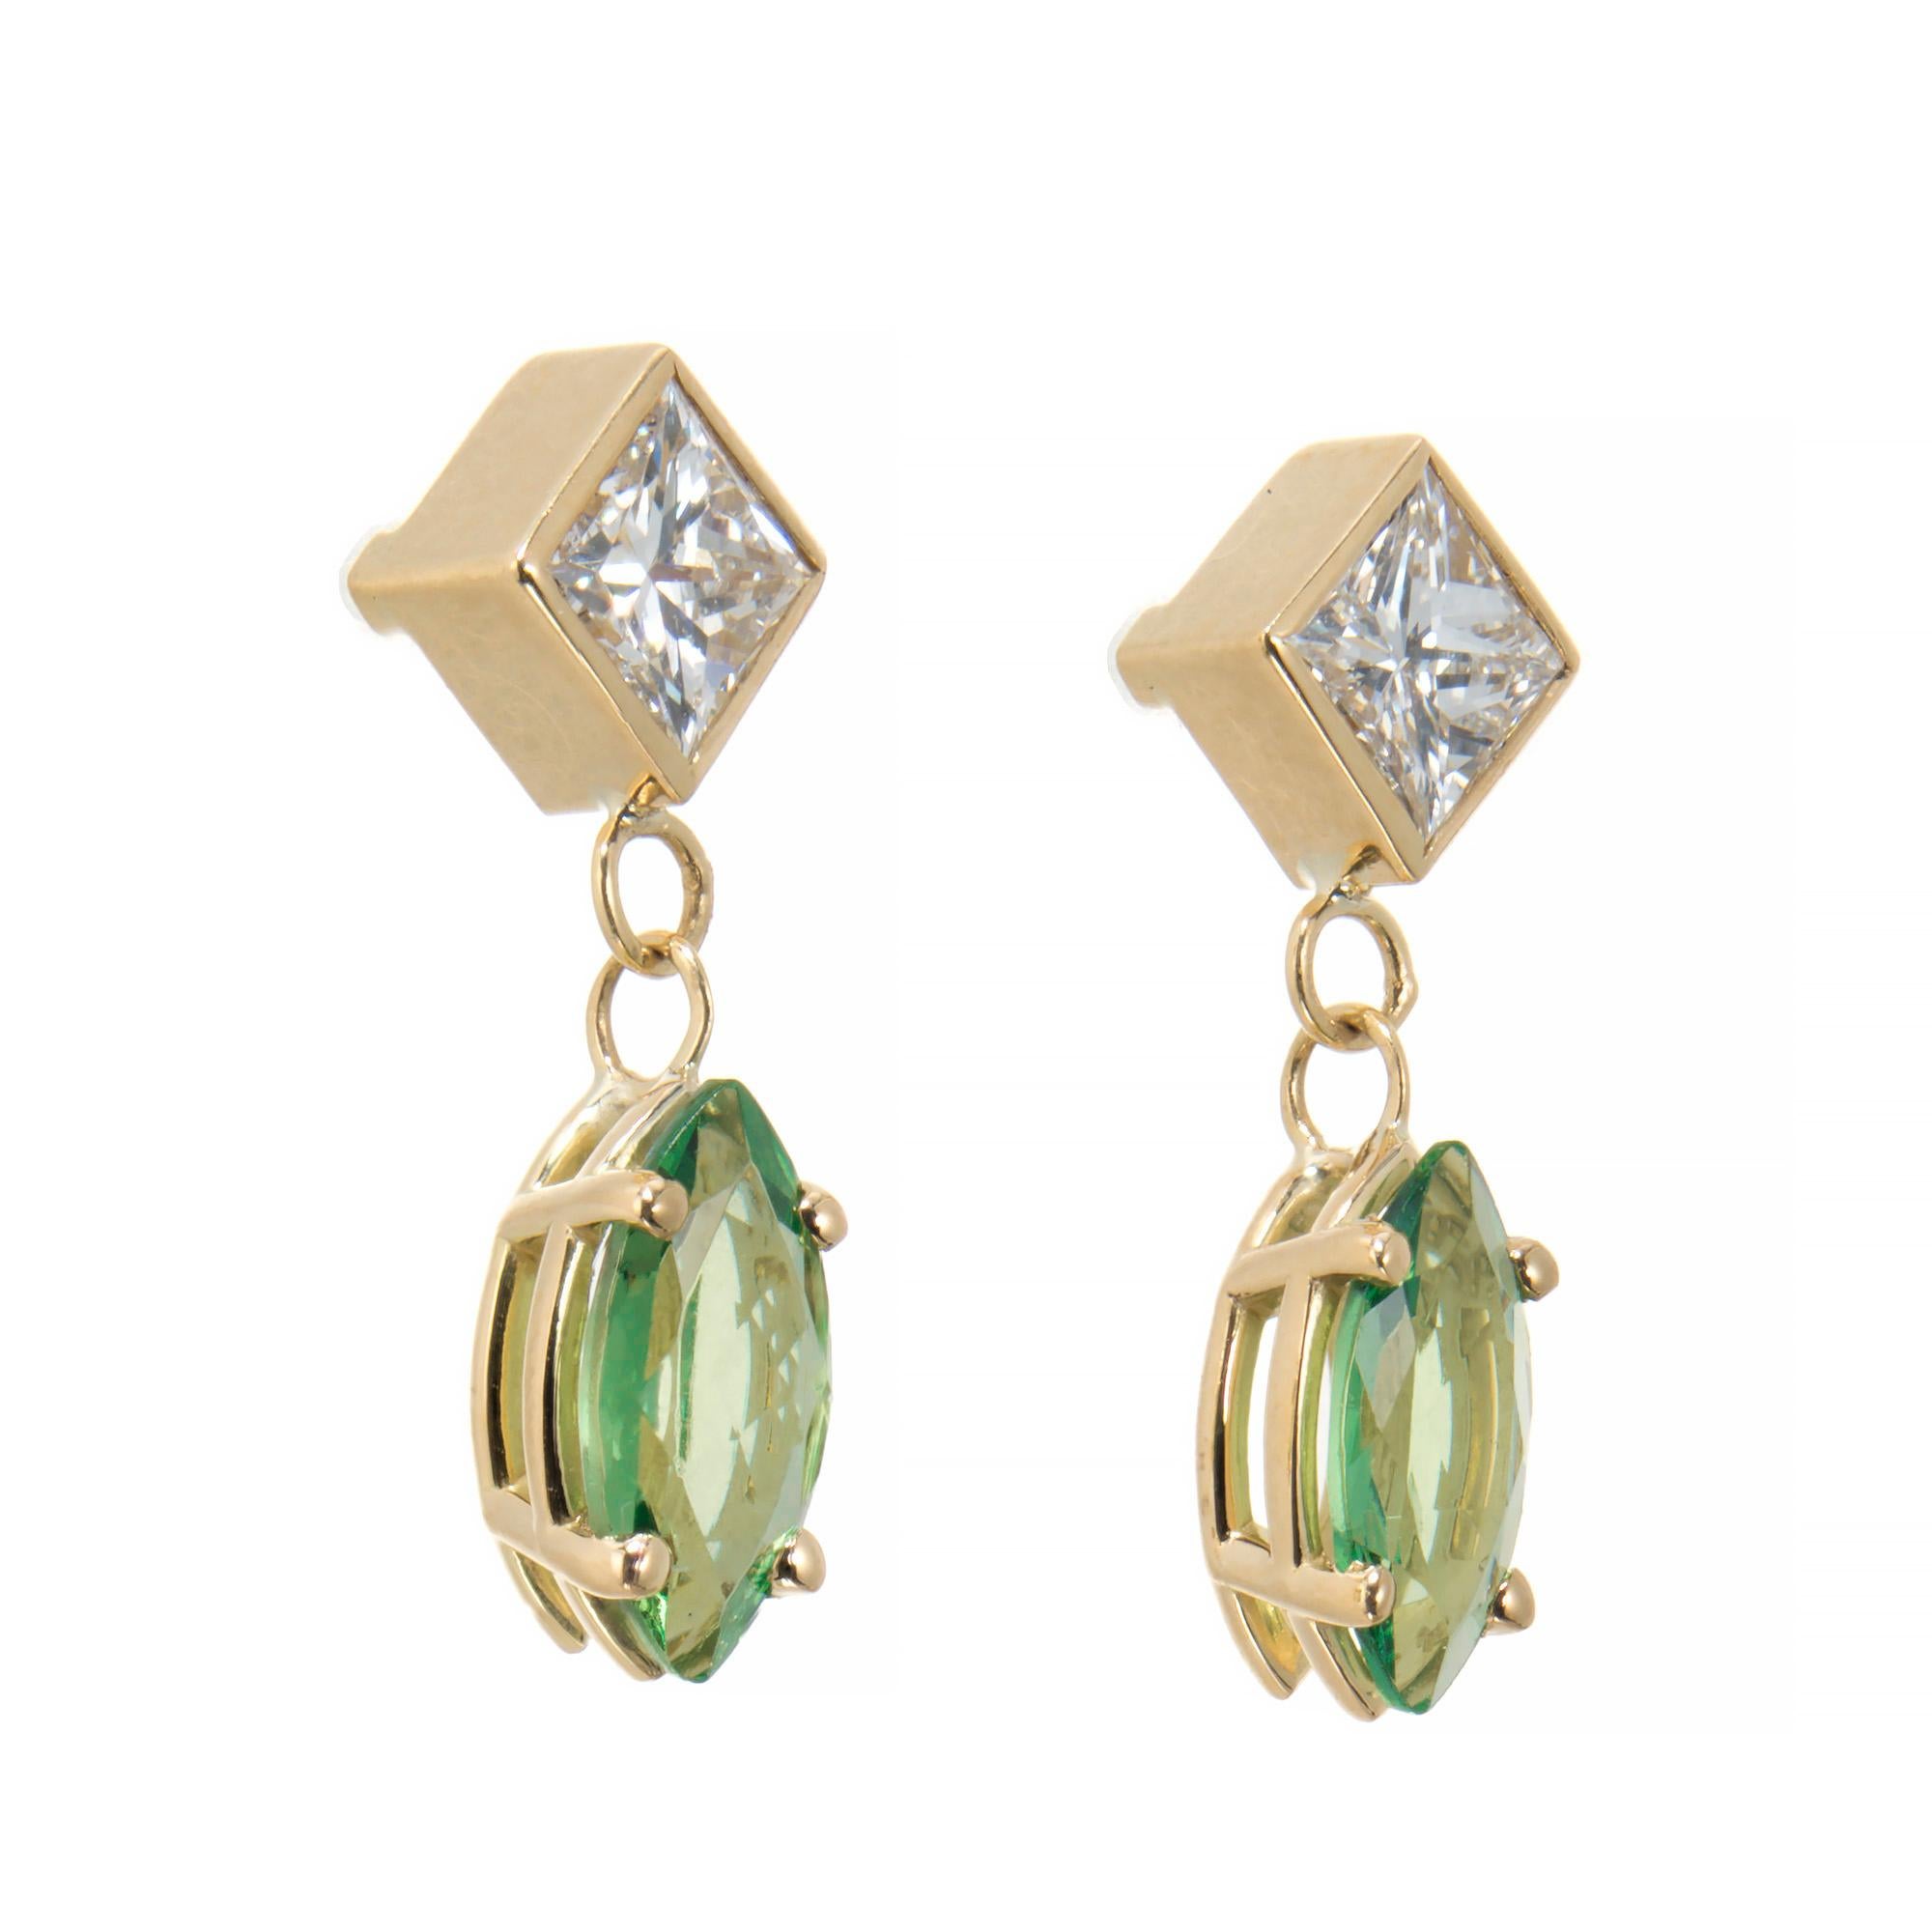 Tsavorit-Granat und Diamant-Ohrringe. Zwei leuchtend grüne, marquise Tsavorit-Granate baumeln in schlichter Vier-Zacken-Fassung, akzentuiert mit zwei weißen Brillanten im Prinzessinnenschliff in Gelbgoldfassungen. Entworfen und hergestellt in der